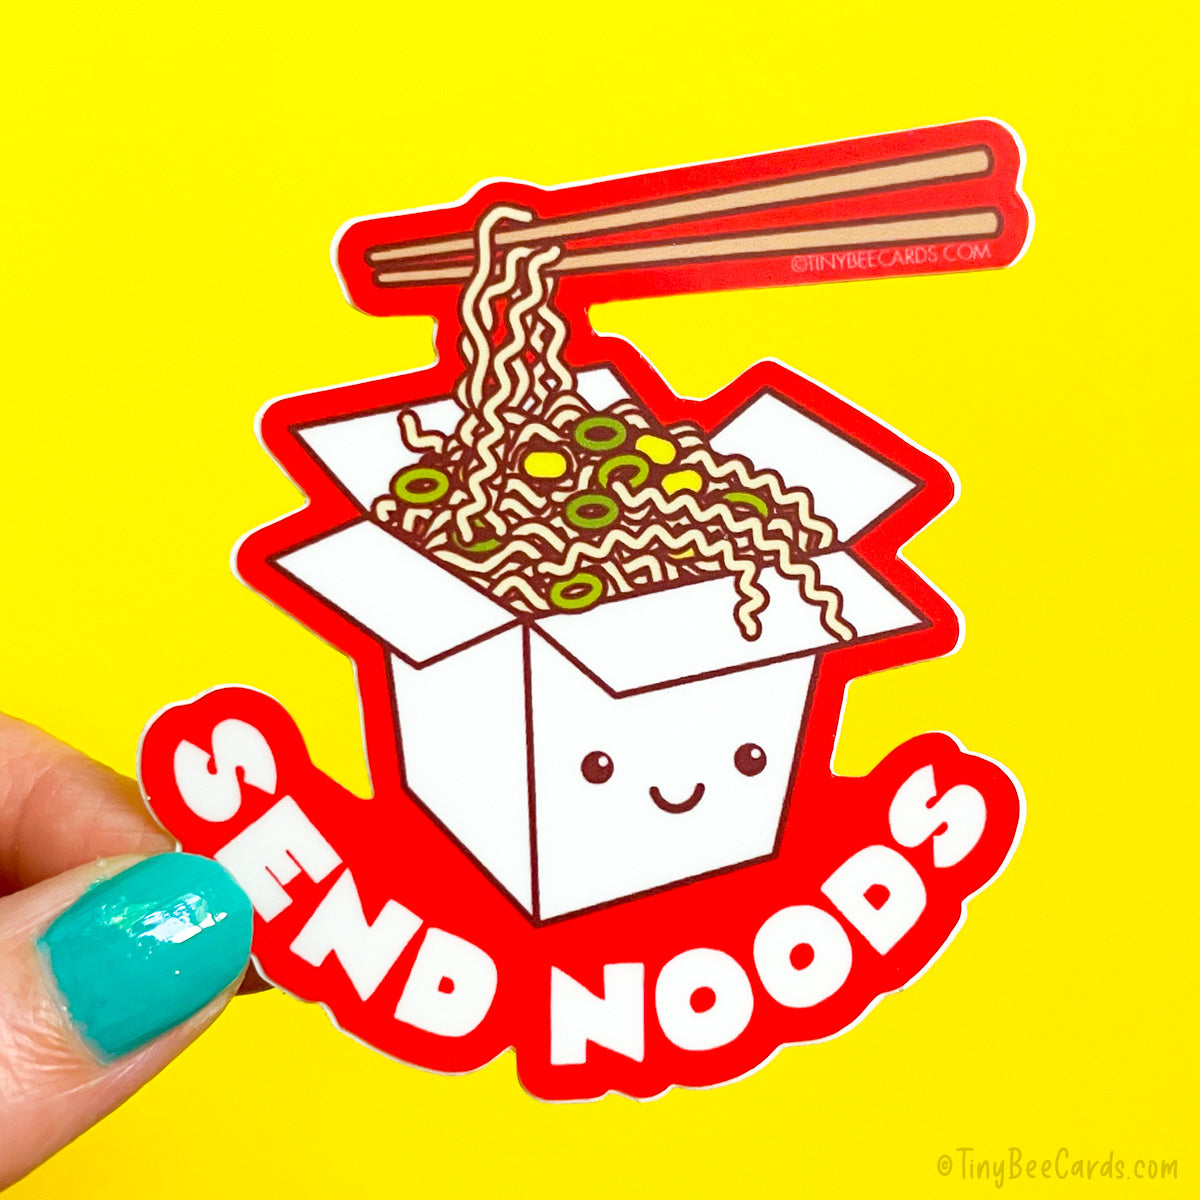 teksten Het beste Kindercentrum Funny Ramen Noodles Cheeky Rude Vinyl Sticker "Send Noods" – TinyBeeCards